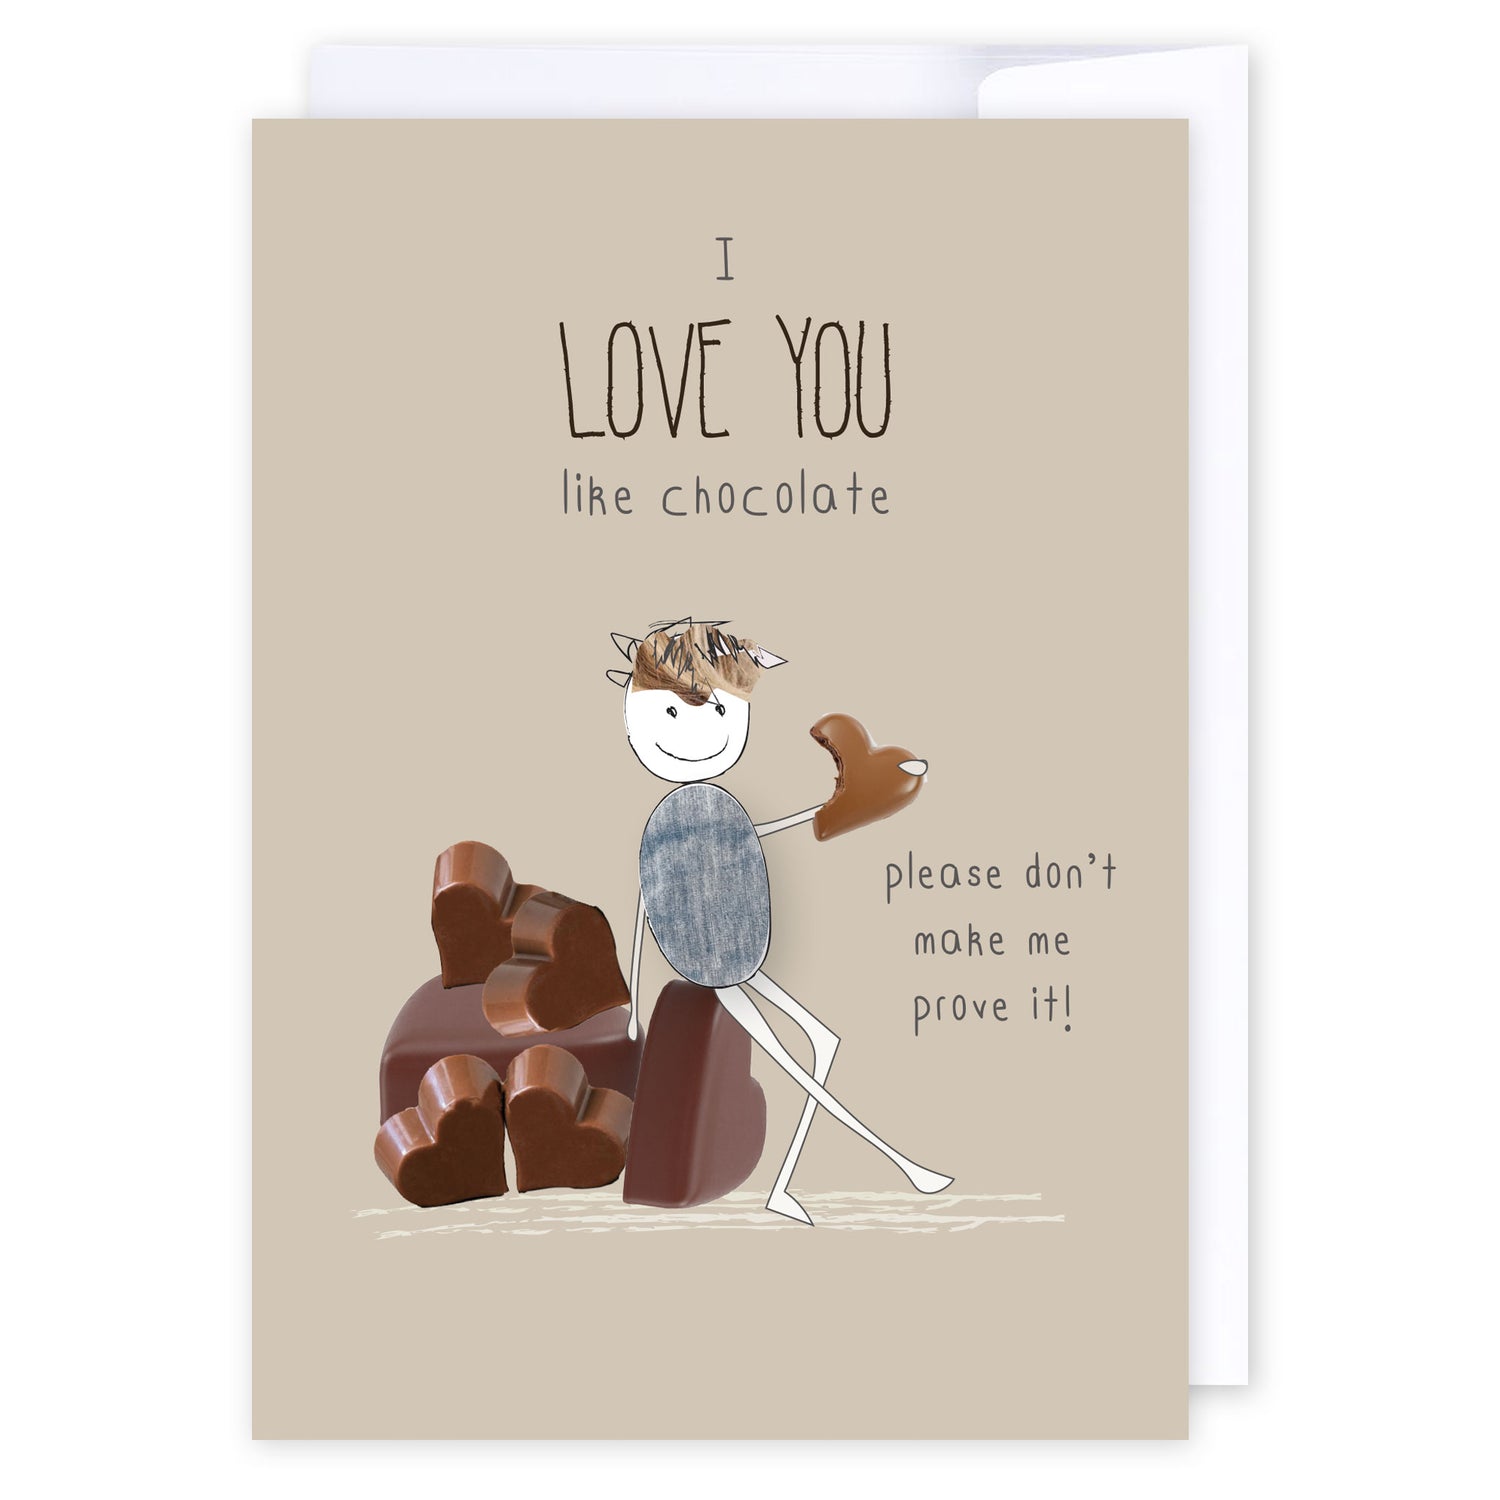 I love you like chocolate